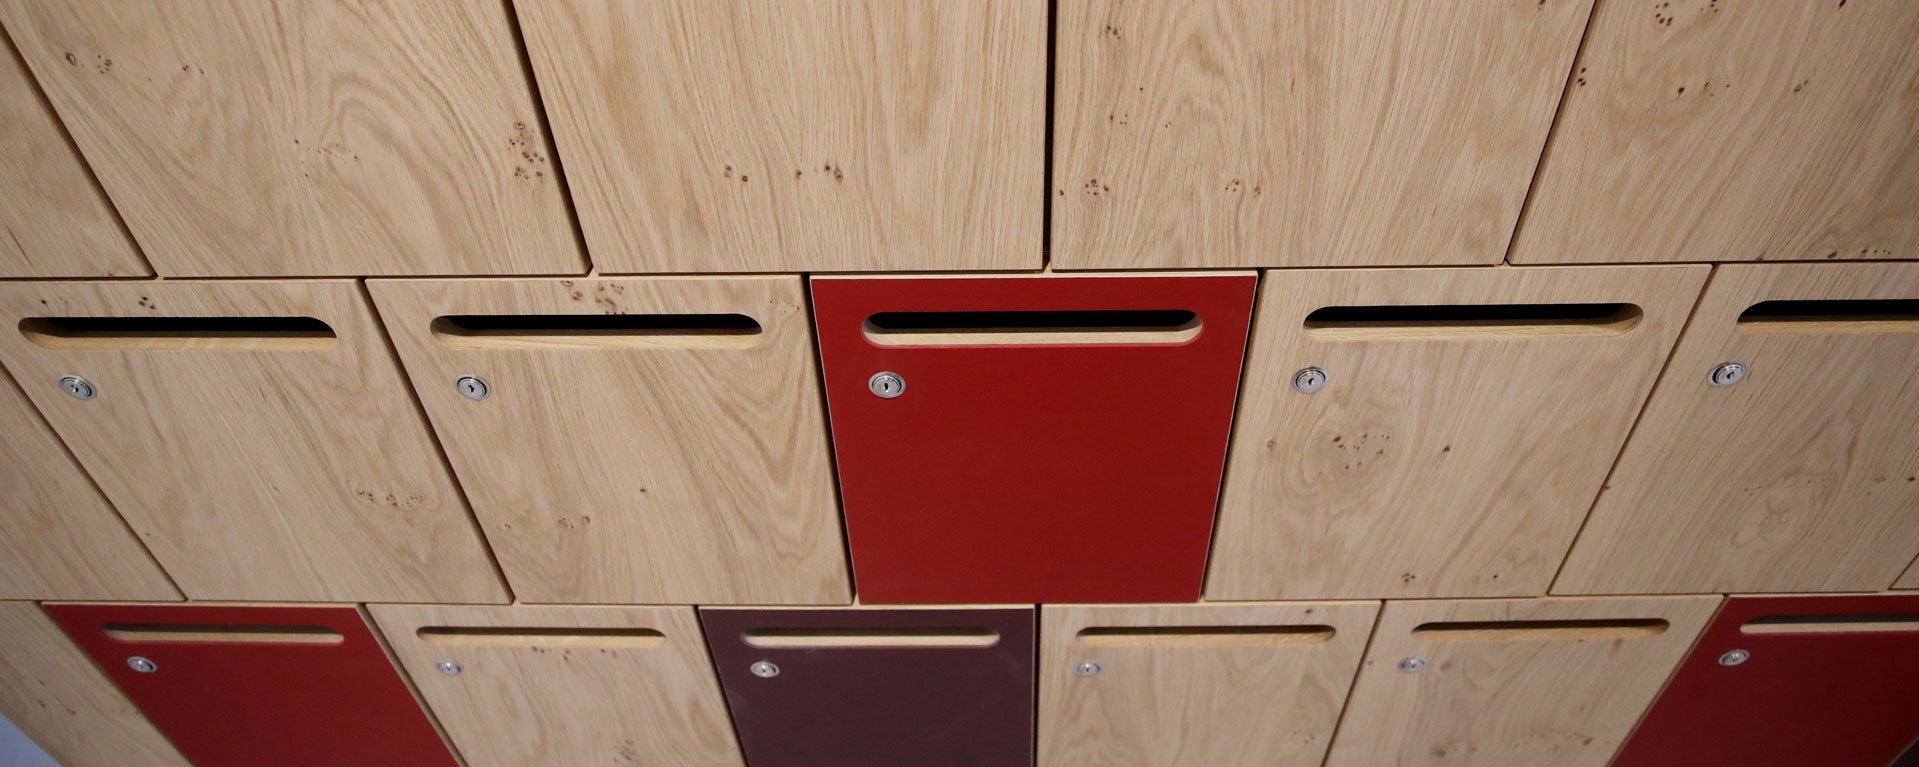 Detailansicht der Briefkastenwand mit naturholz farbenen und vereinzelt roten Briefklappen